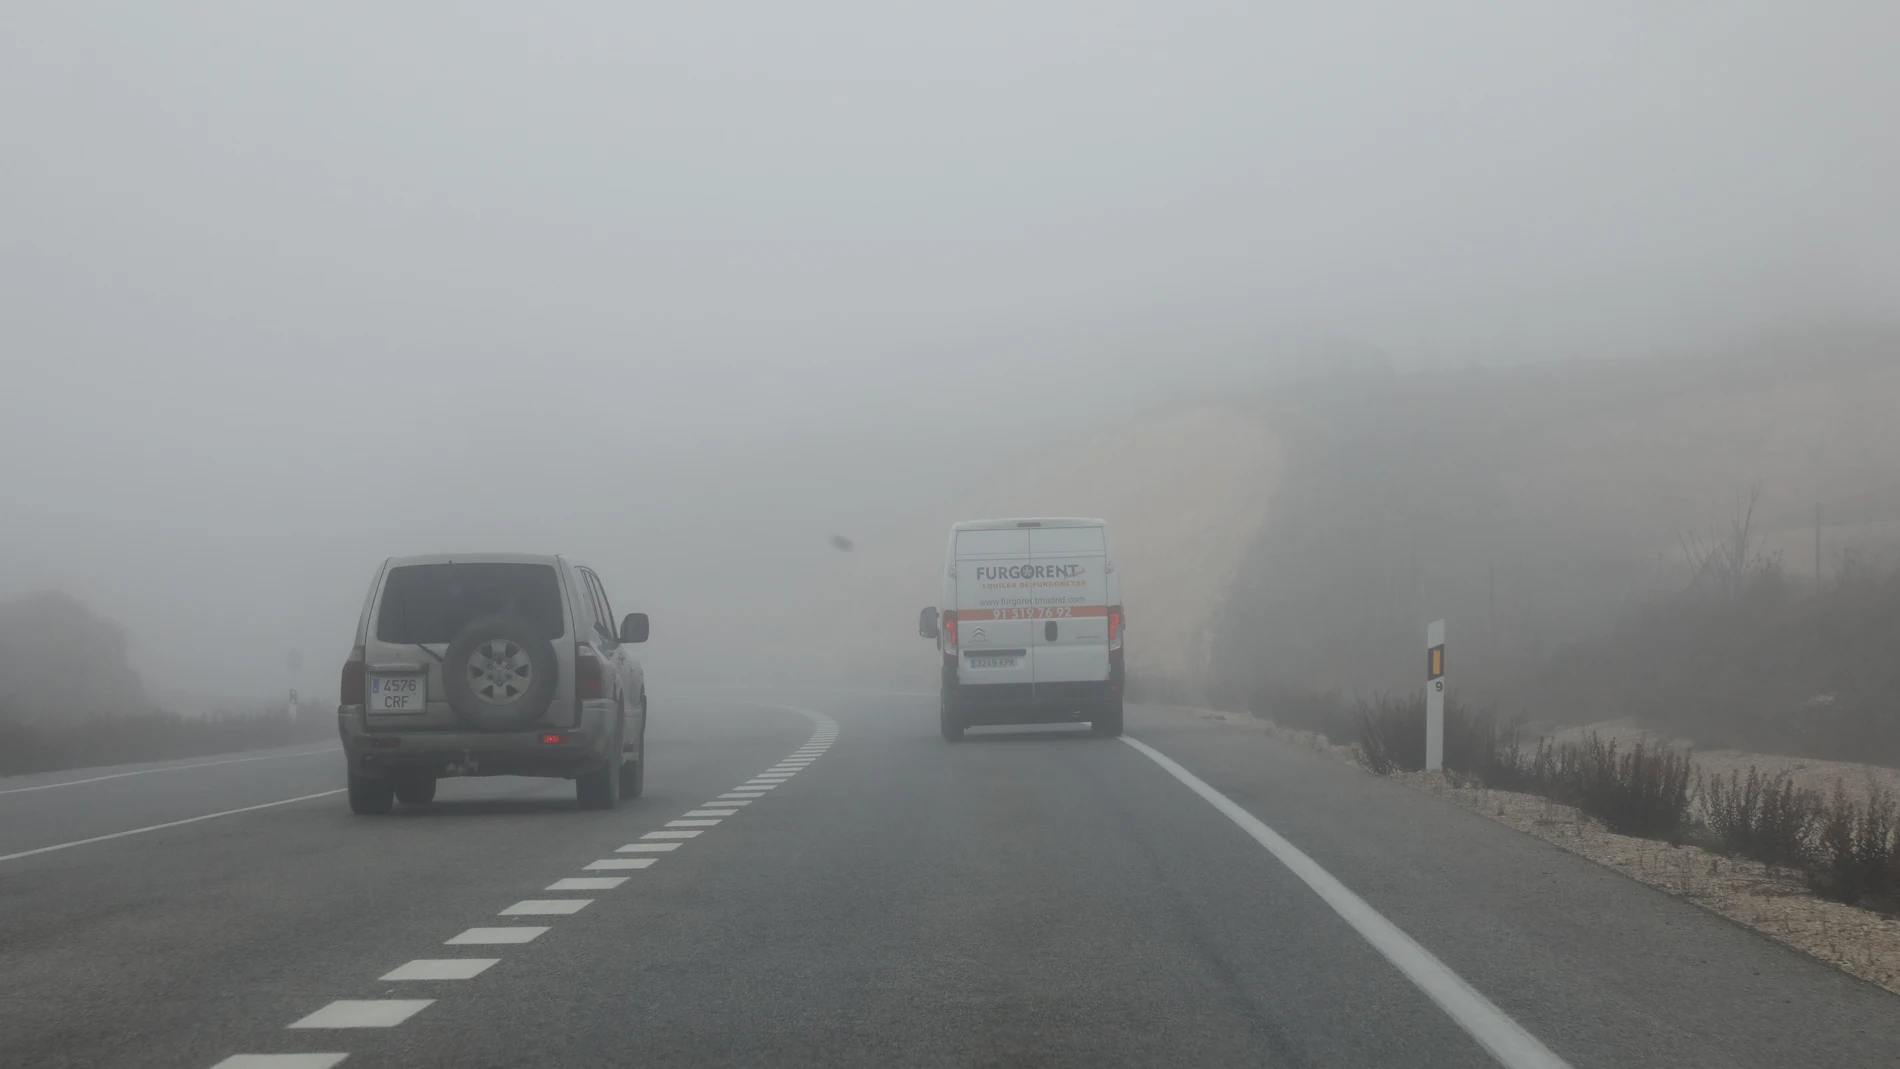 Carretera con trafico y mucha niebla, pero los coches circulan sin las luces reglamentarias.